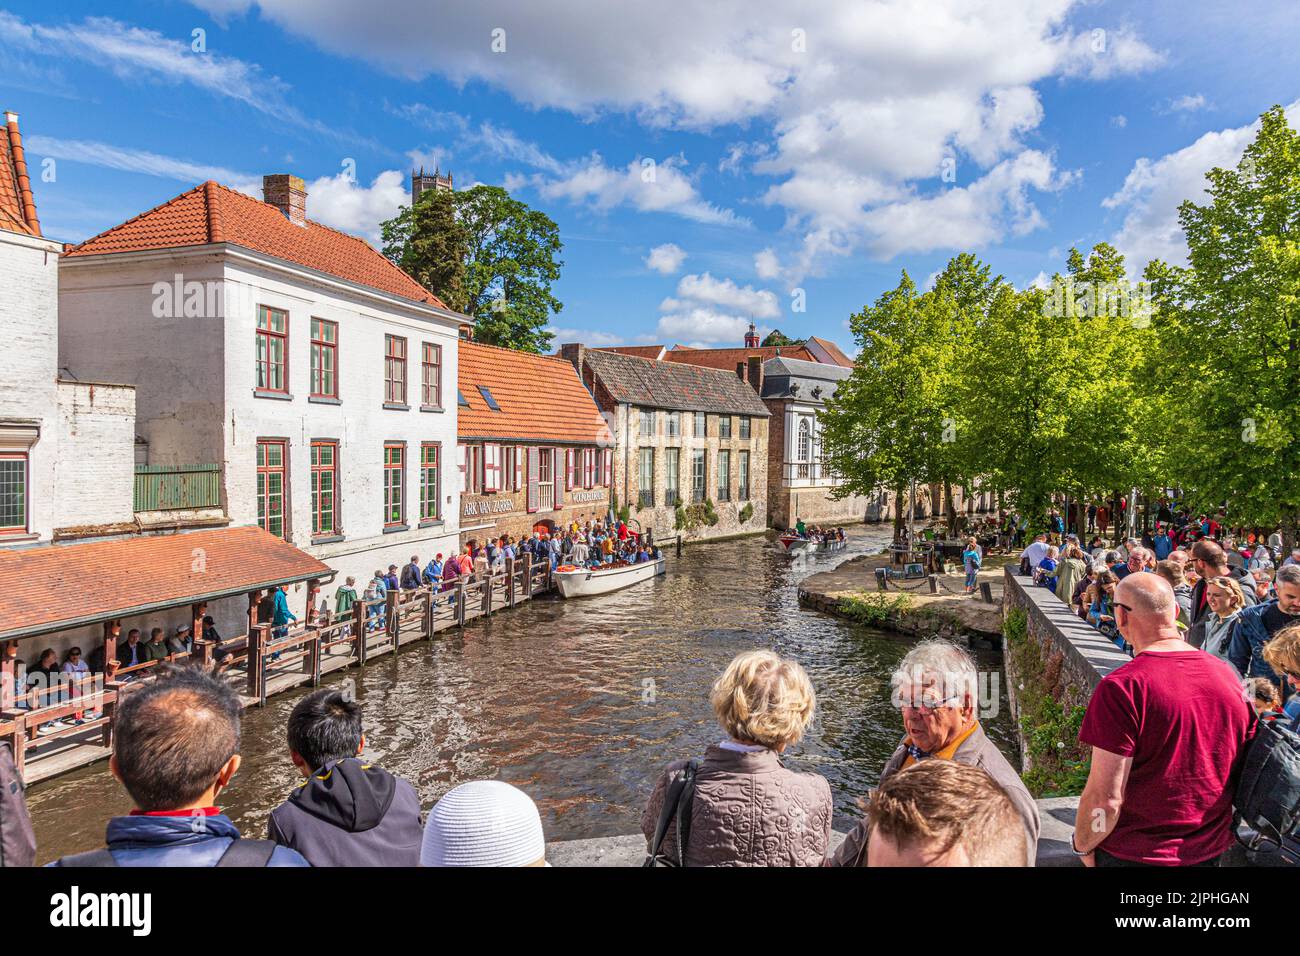 Les touristes font la queue pour une visite guidée en bateau autour des canaux de Bruges, en Belgique Banque D'Images